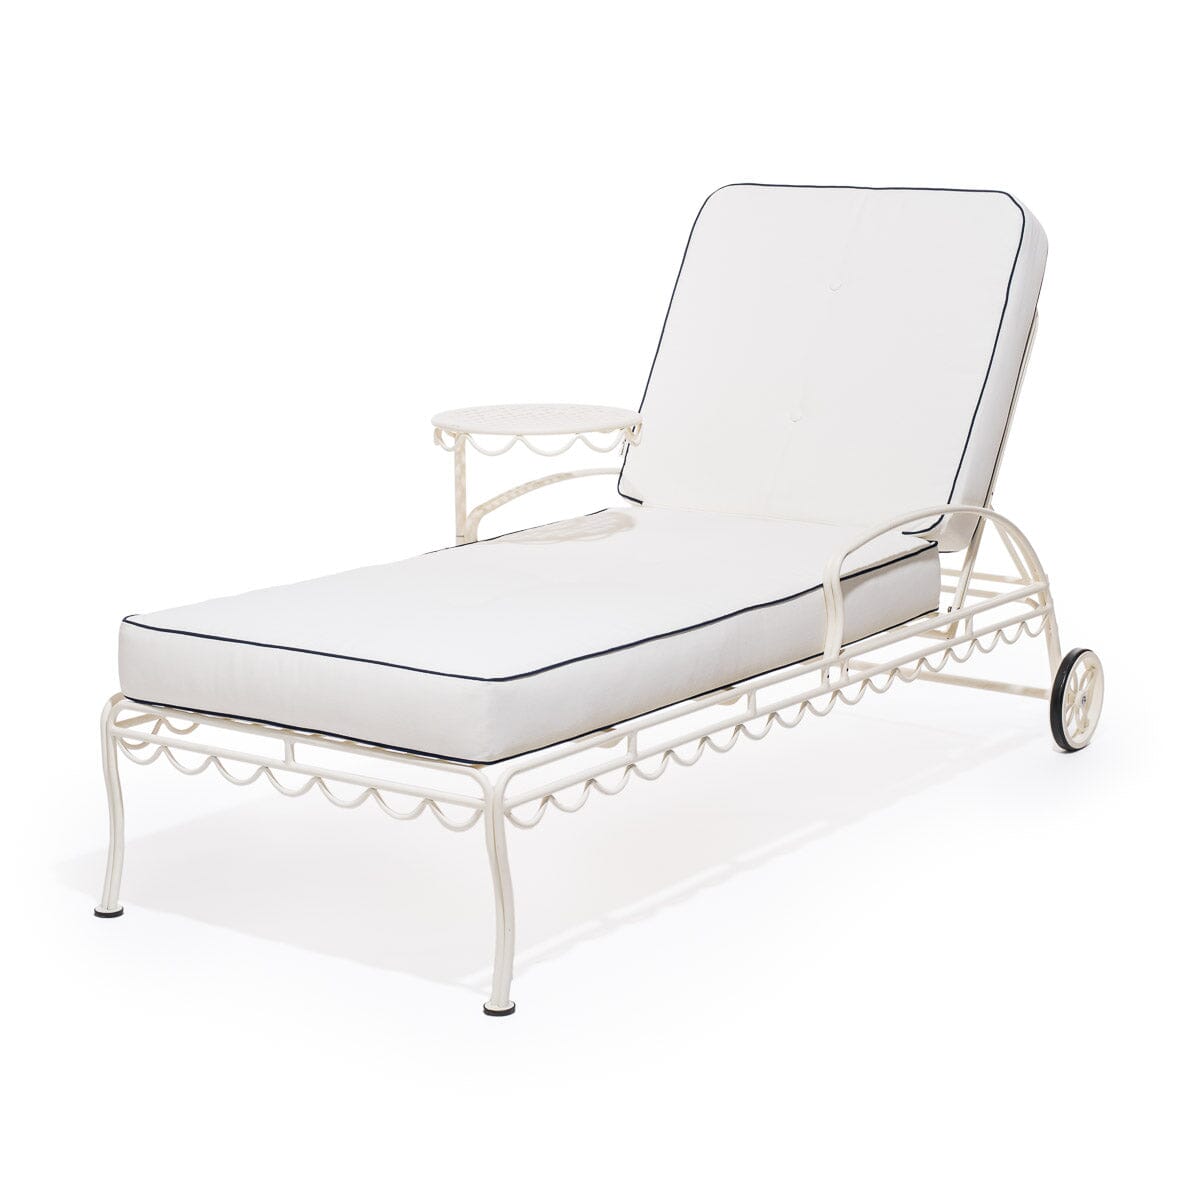 The Al Fresco Sun Lounger Cushion - Rivie White Al Fresco Sun Lounger Cushion Business & Pleasure Co Aus 